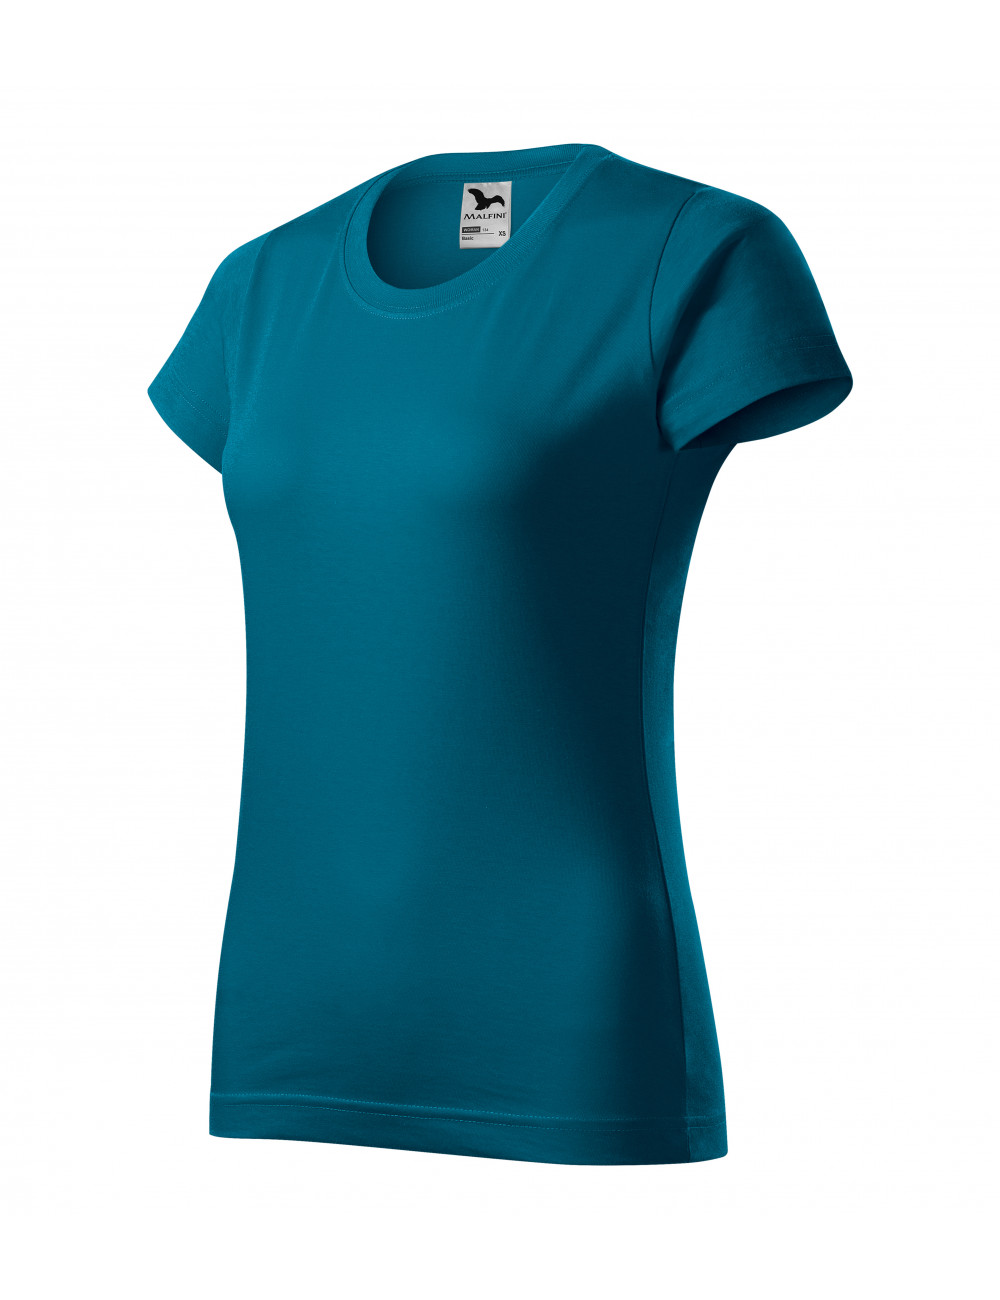 Women`s basic t-shirt 134 petrol blue Adler Malfini